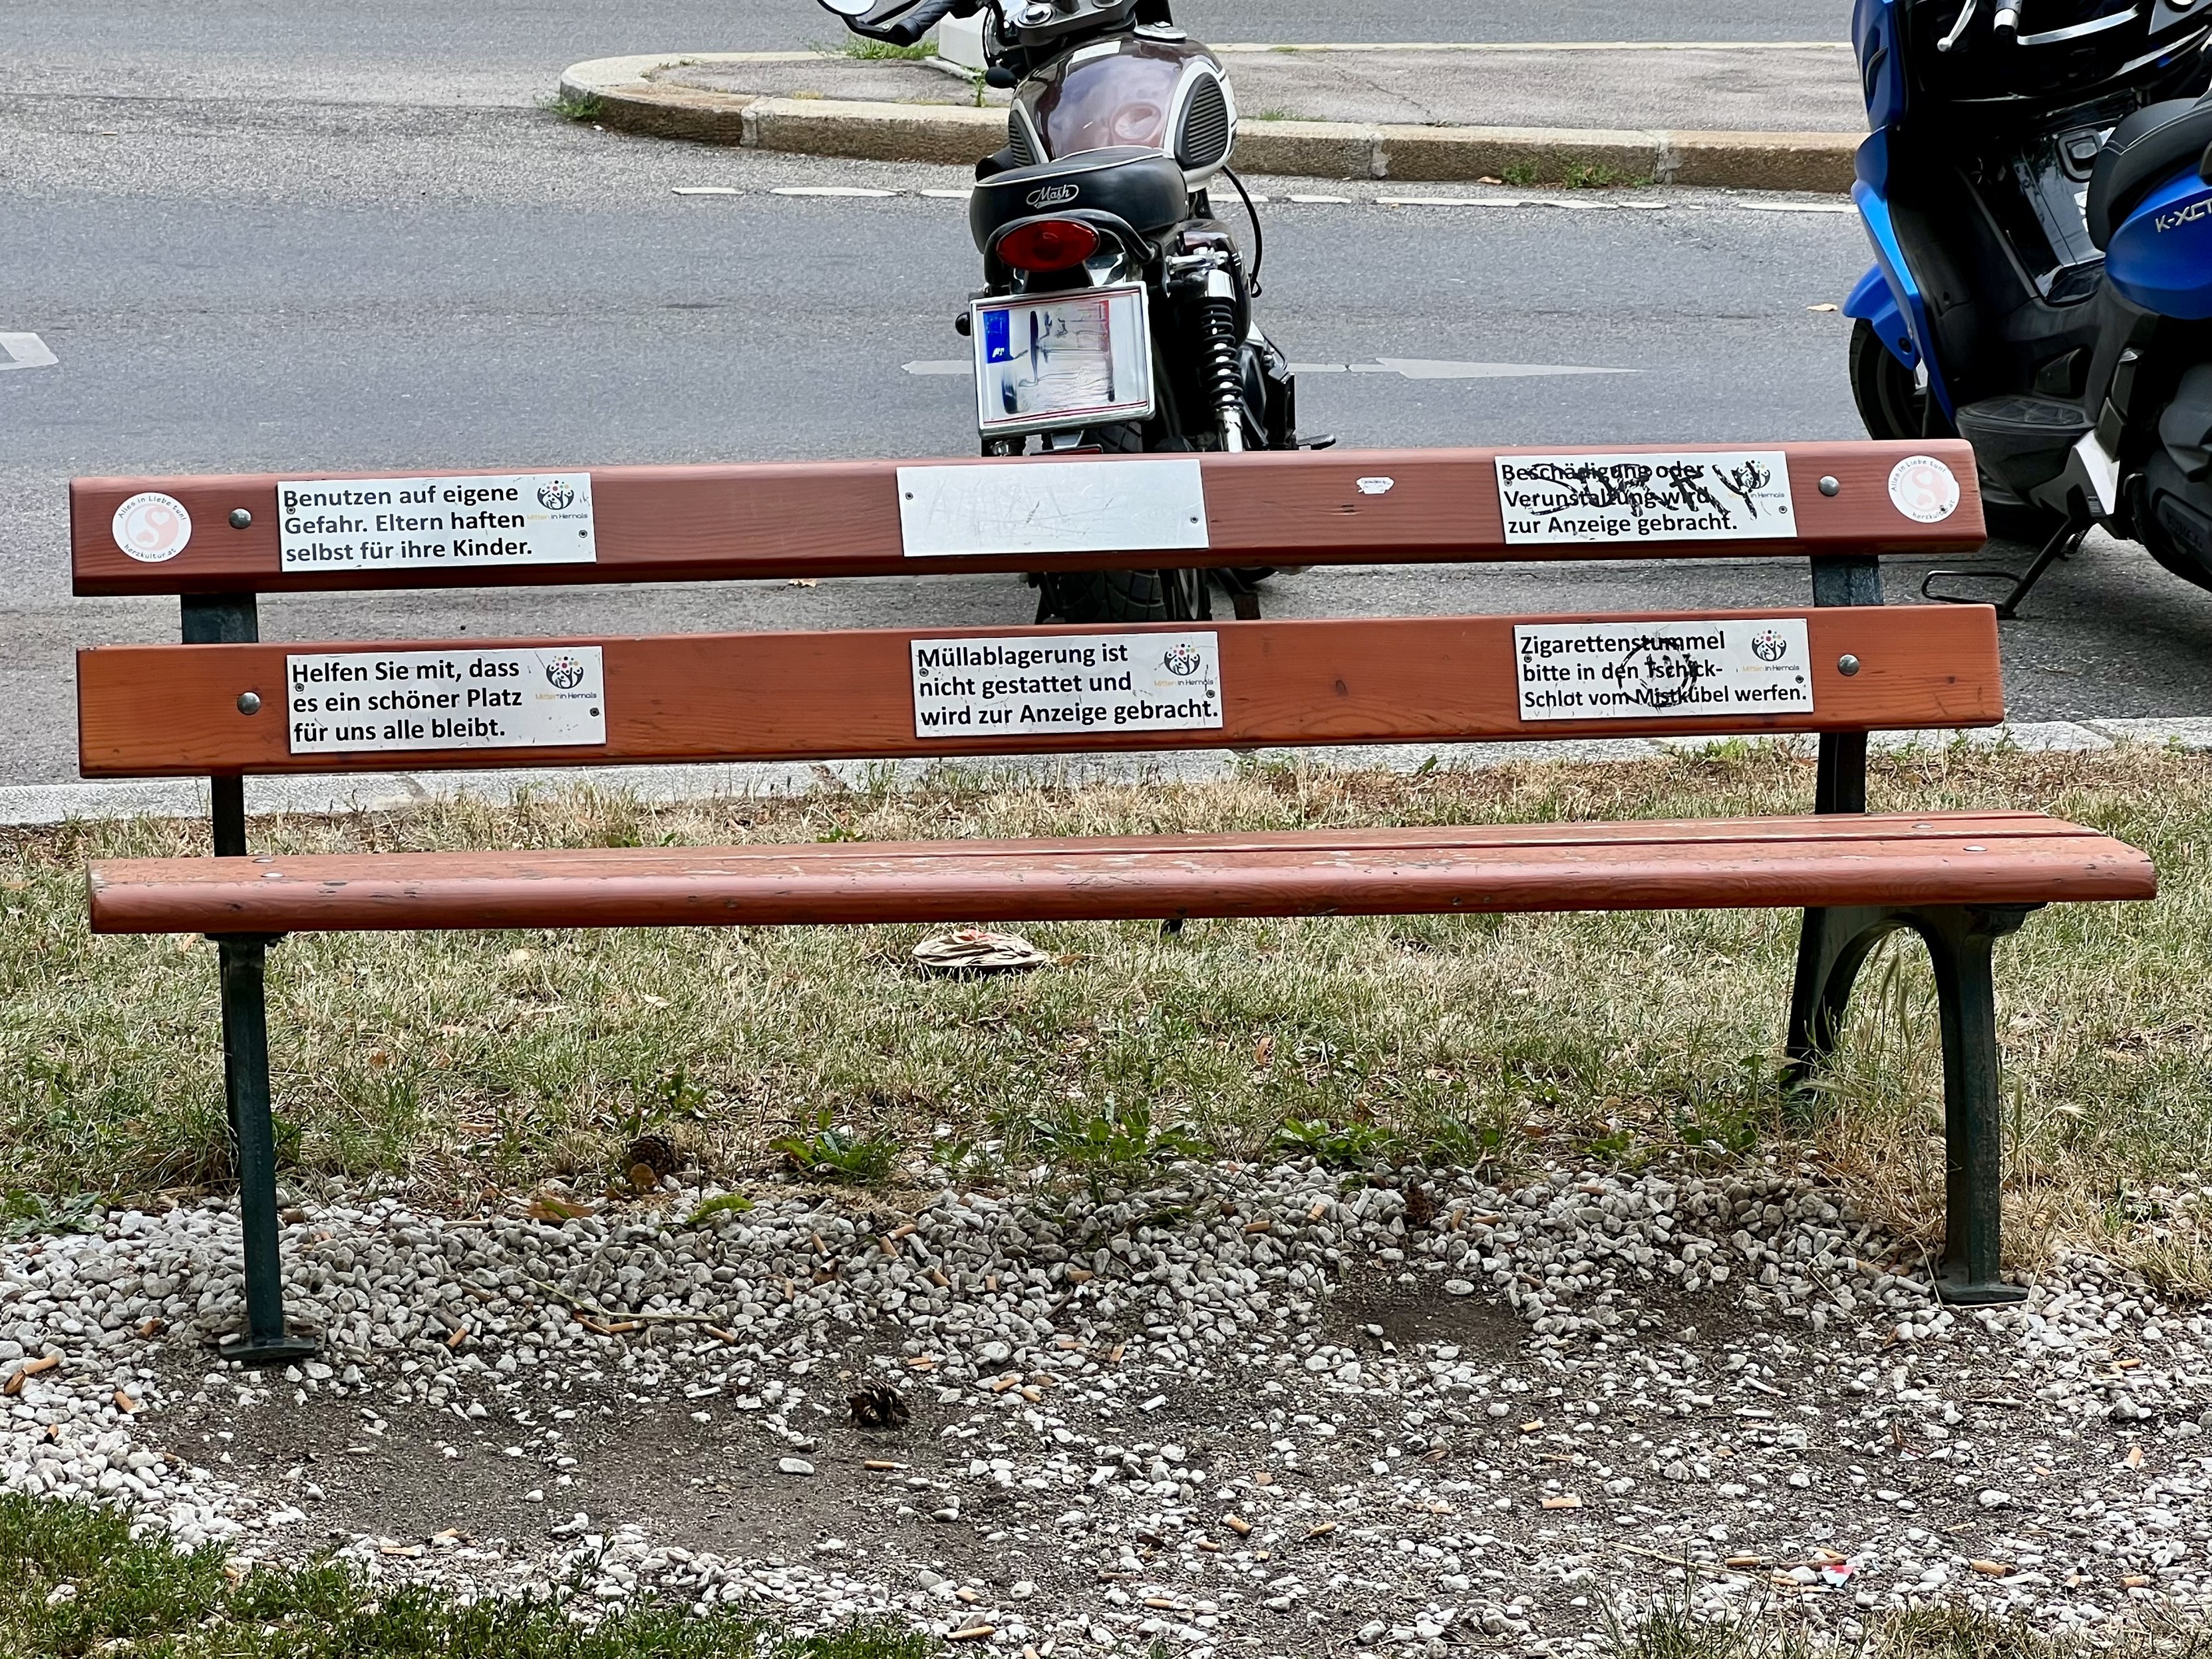 Eine hölzerne Parkbank mit mehreren Schildern, die verschiedene Anweisungen und Warnungen geben. Hinter der Bank sind geparkte Motorräder zu sehen. Die Bank steht auf einer Rasenfläche mit Kies und Zigarettenstummeln auf dem Boden.